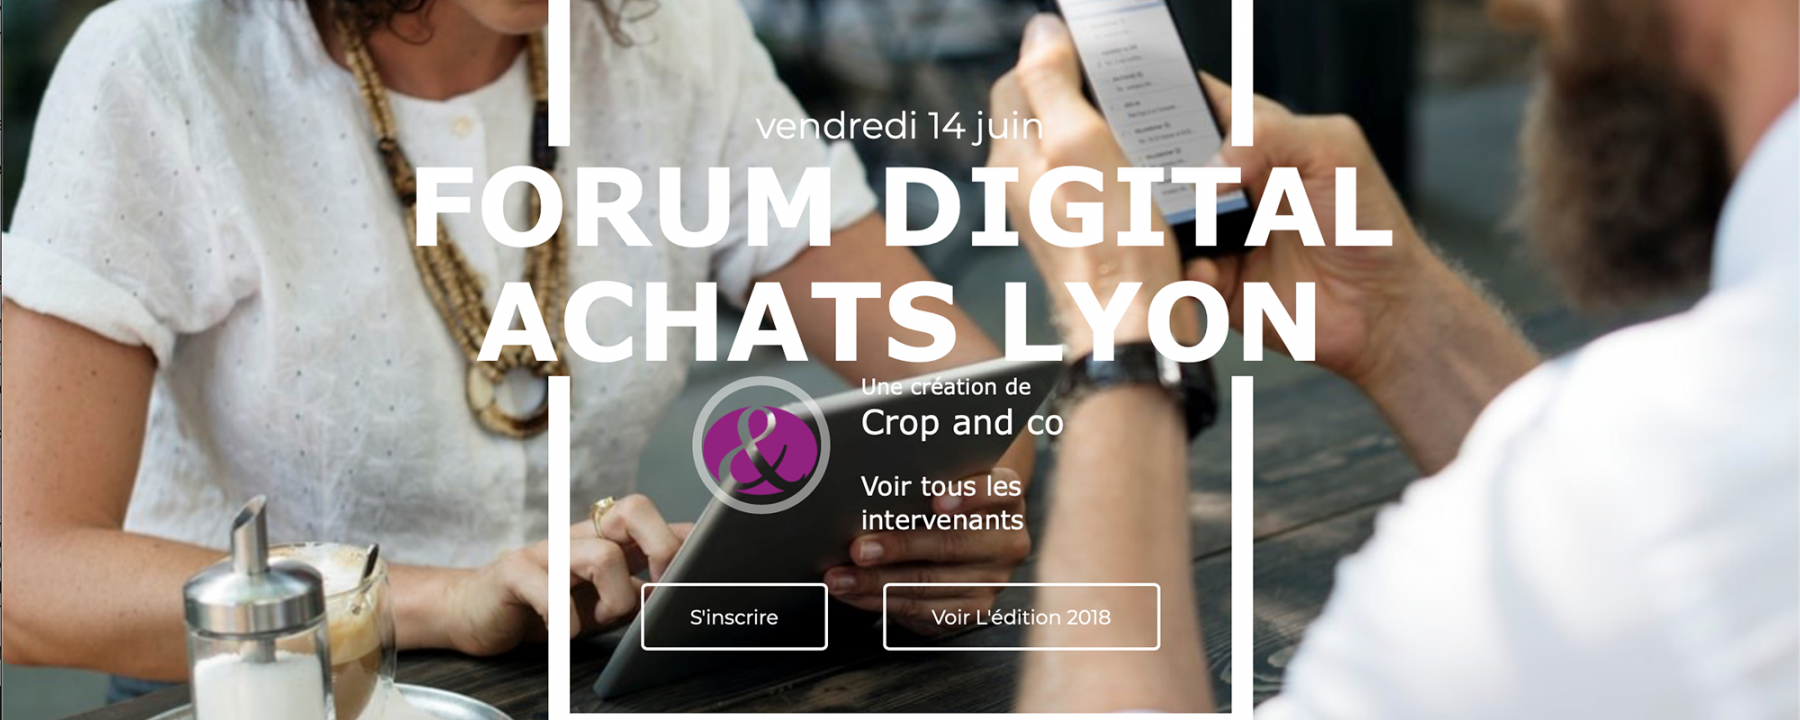 2e édition forum digital des achats Lyon 2019